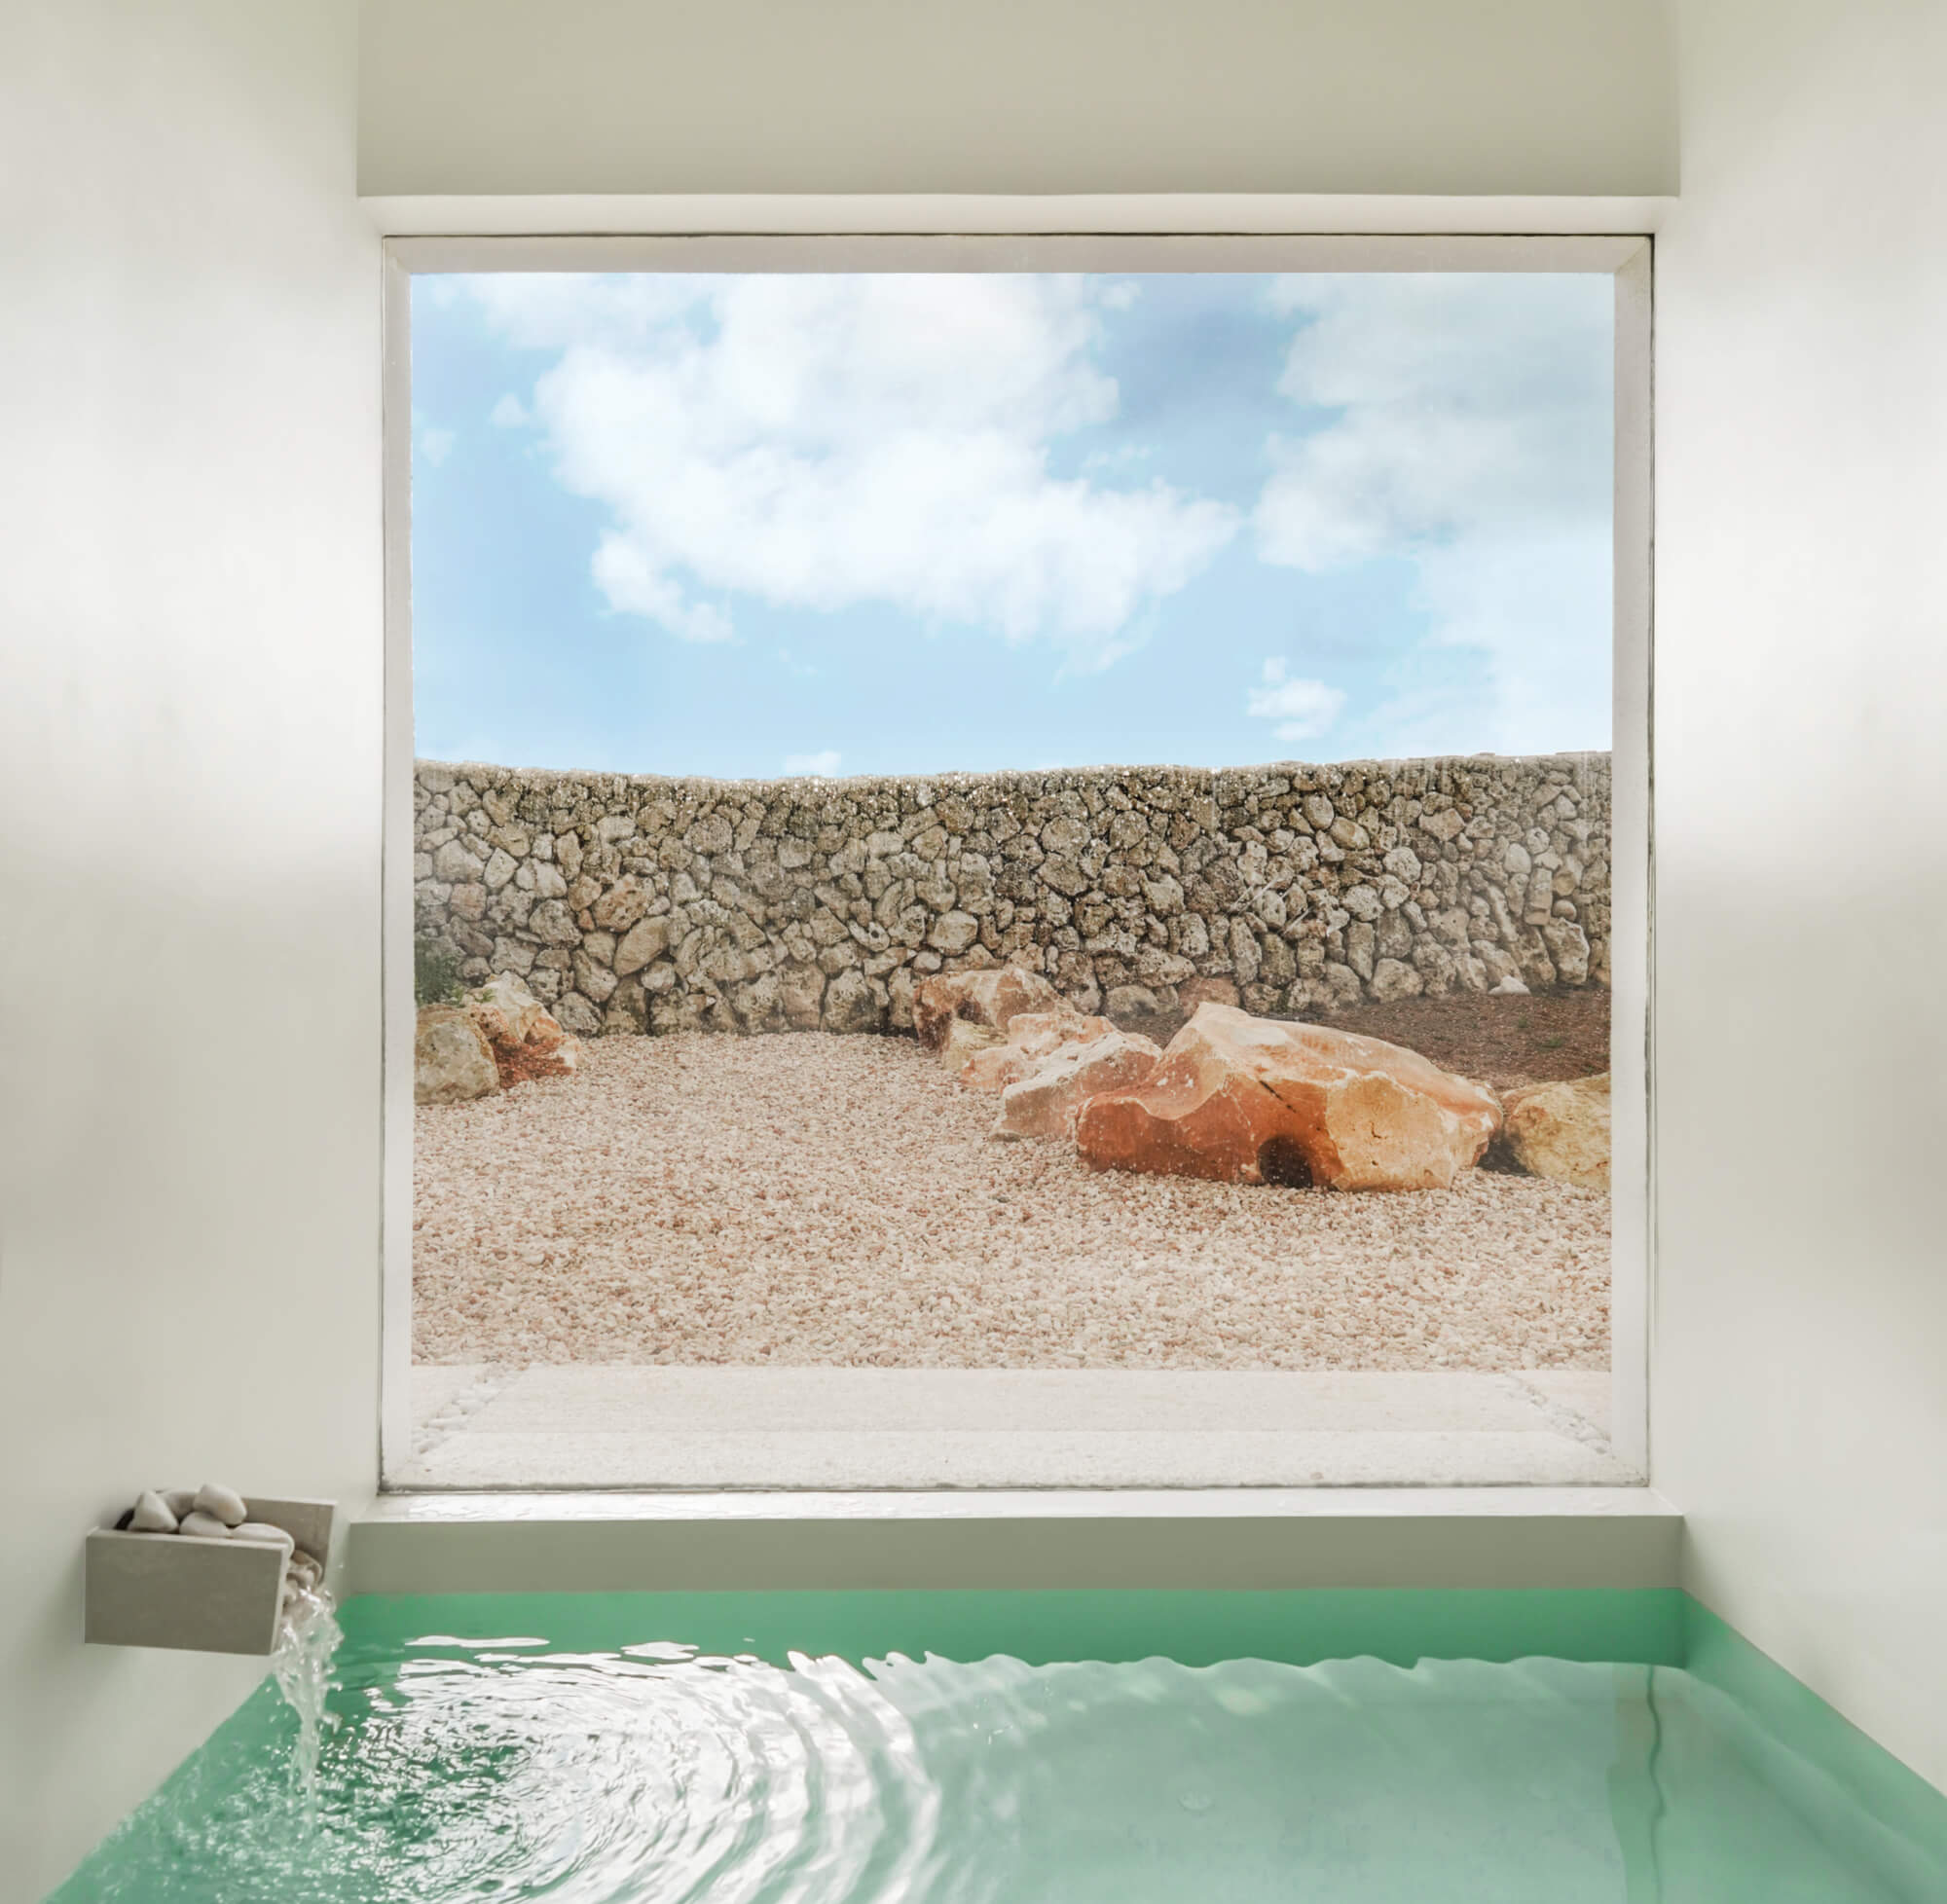 CasaE - Marina Senabre, Casa Minimalista, casa de campo com banheira minimalista. com grande janela quadrada.